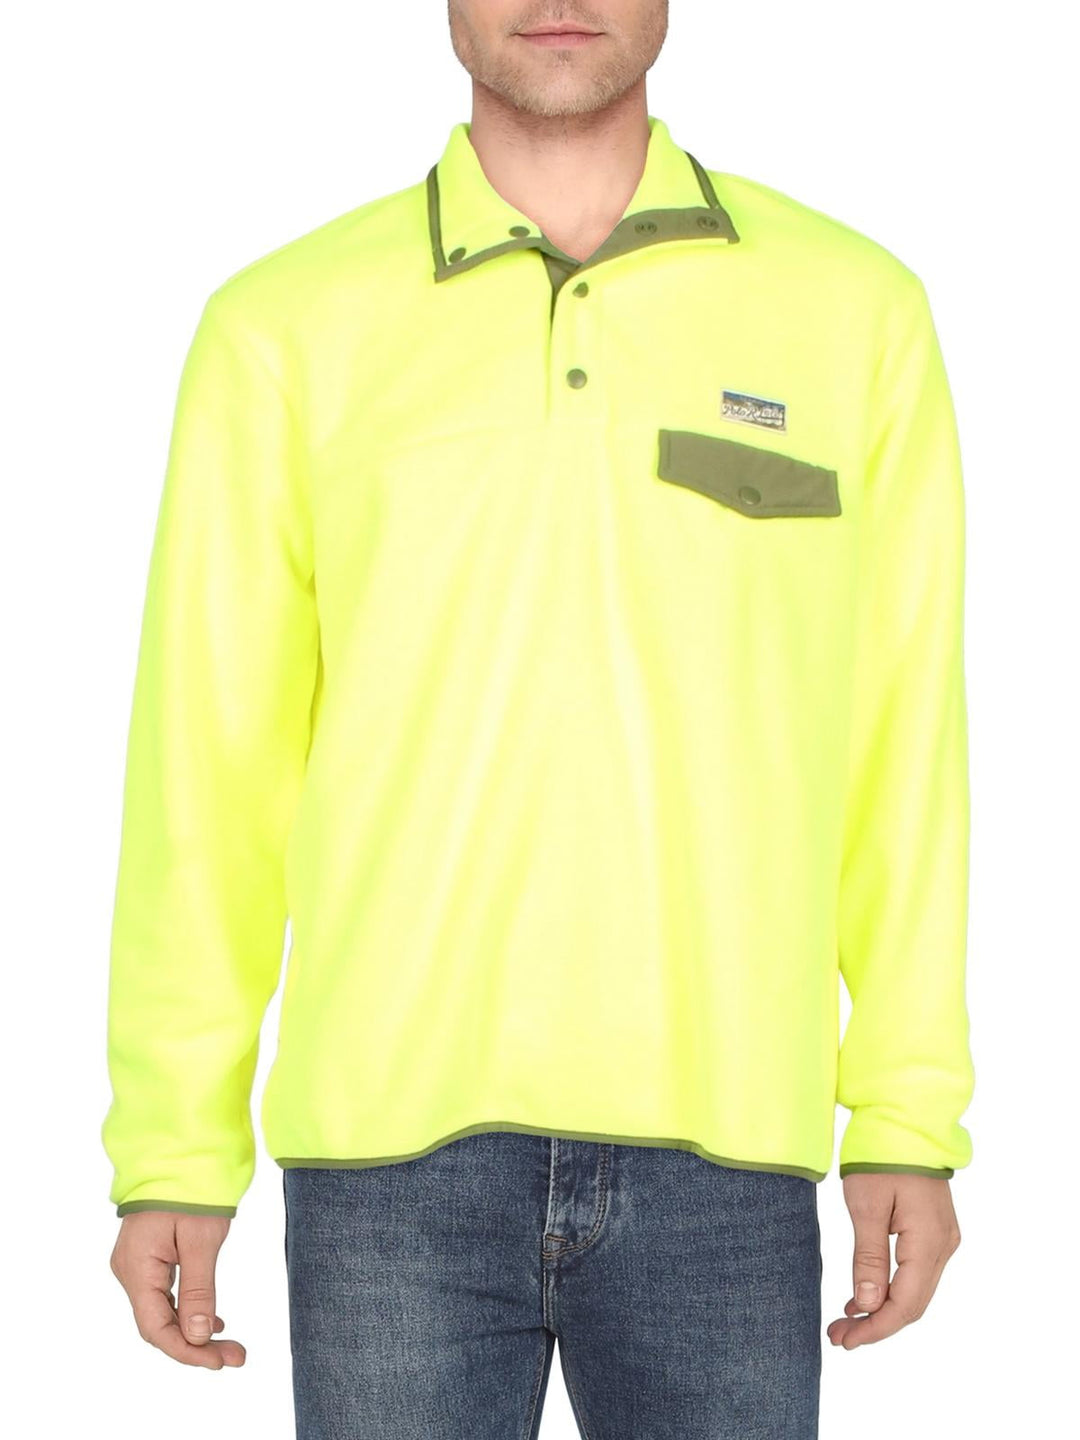 Polo Ralph Lauren Men's Fleece Pullover Sweatshirt Yellow Size X-Large